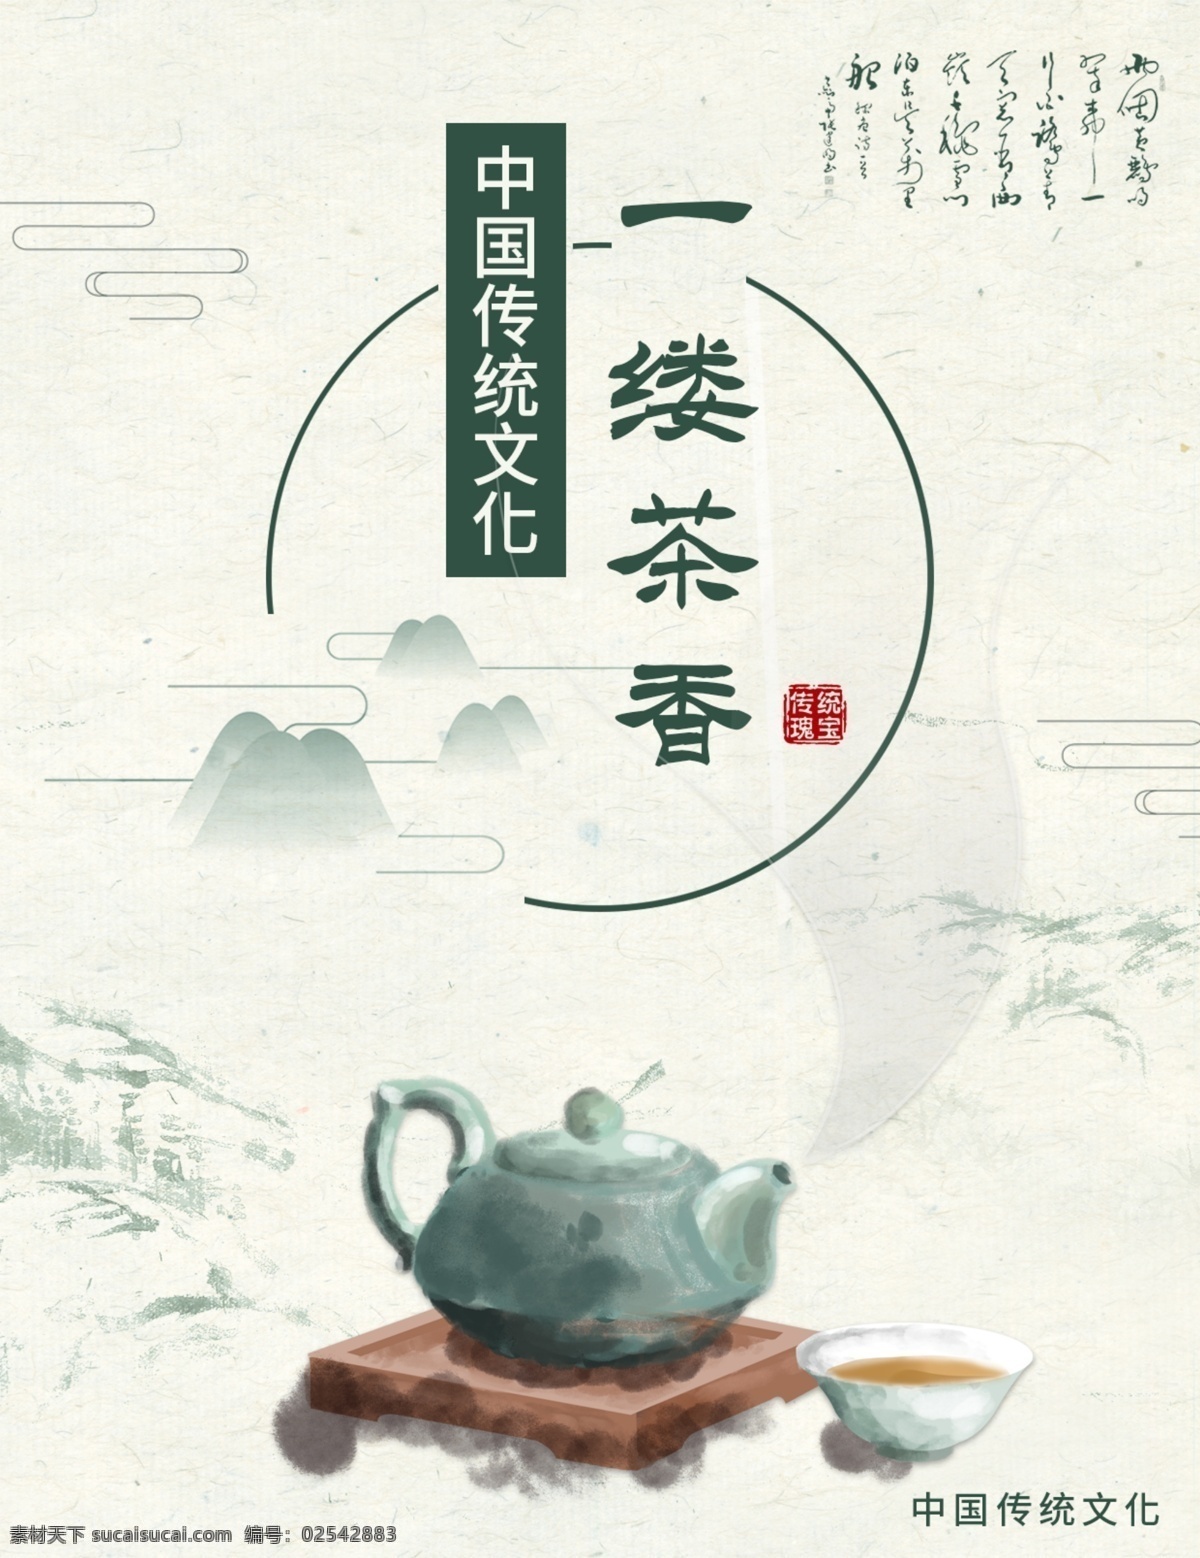 白色 简约 中国 风 茶文化 画册 茶叶 中国风 山水 免费 模板 茶壶 品茶